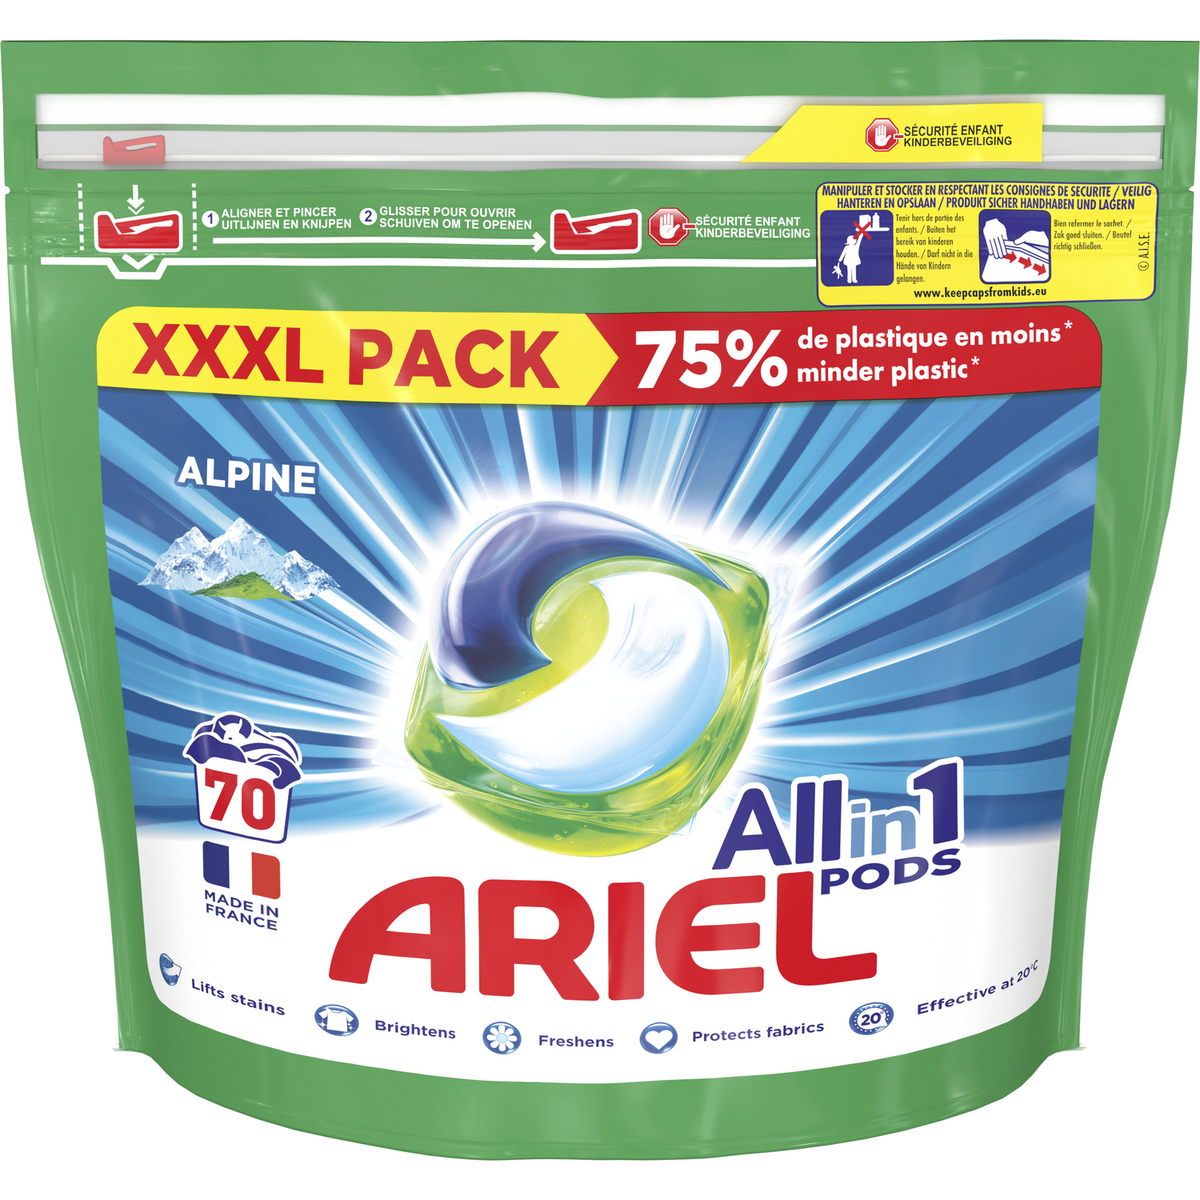 ARIEL Pods capsules de lessive all in 1 alpine 70 capsules pas cher 